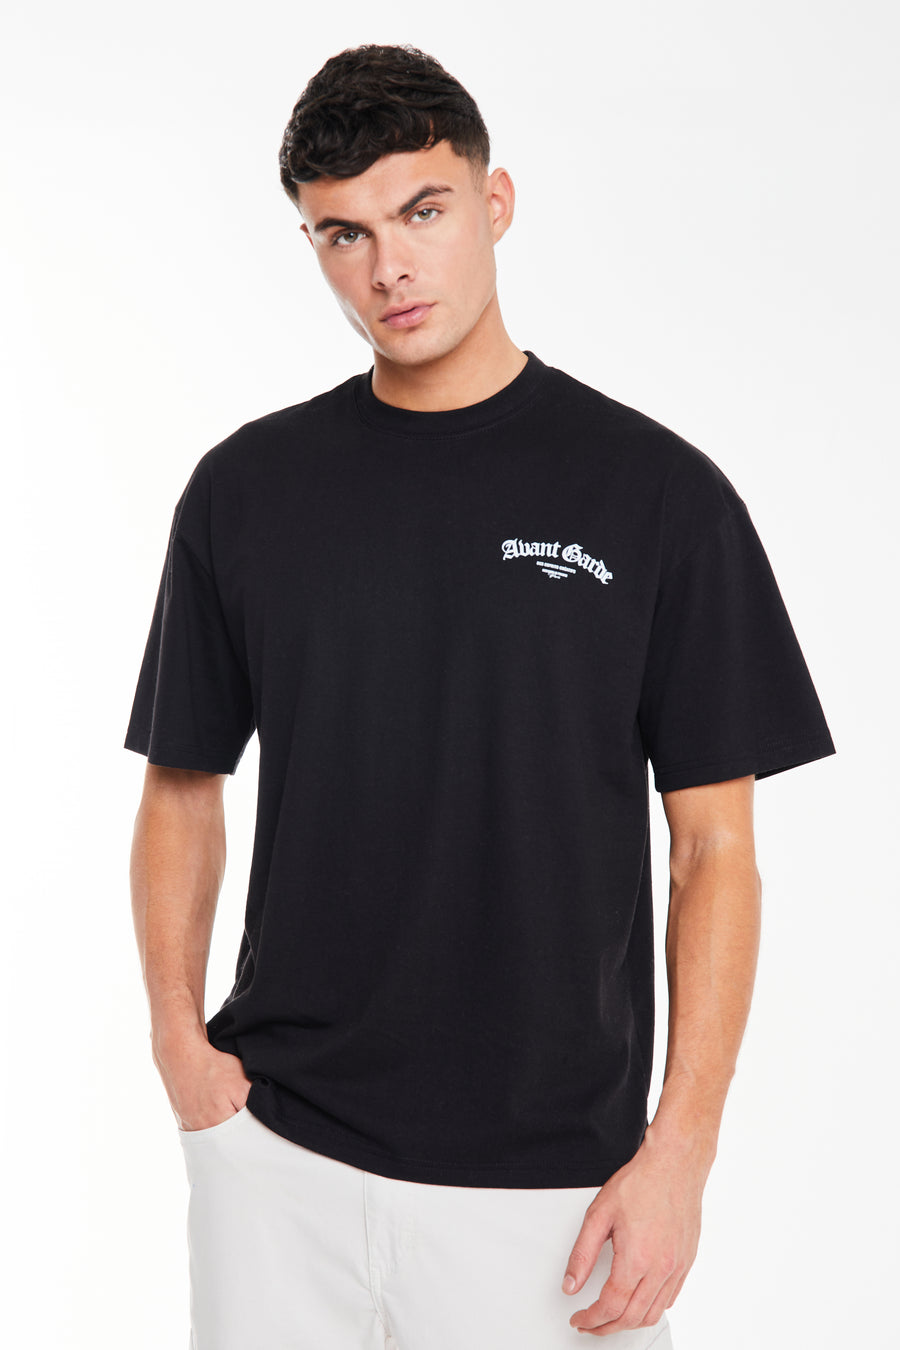 model wearing black t-shirt for men with white 'Avant Garde' logo